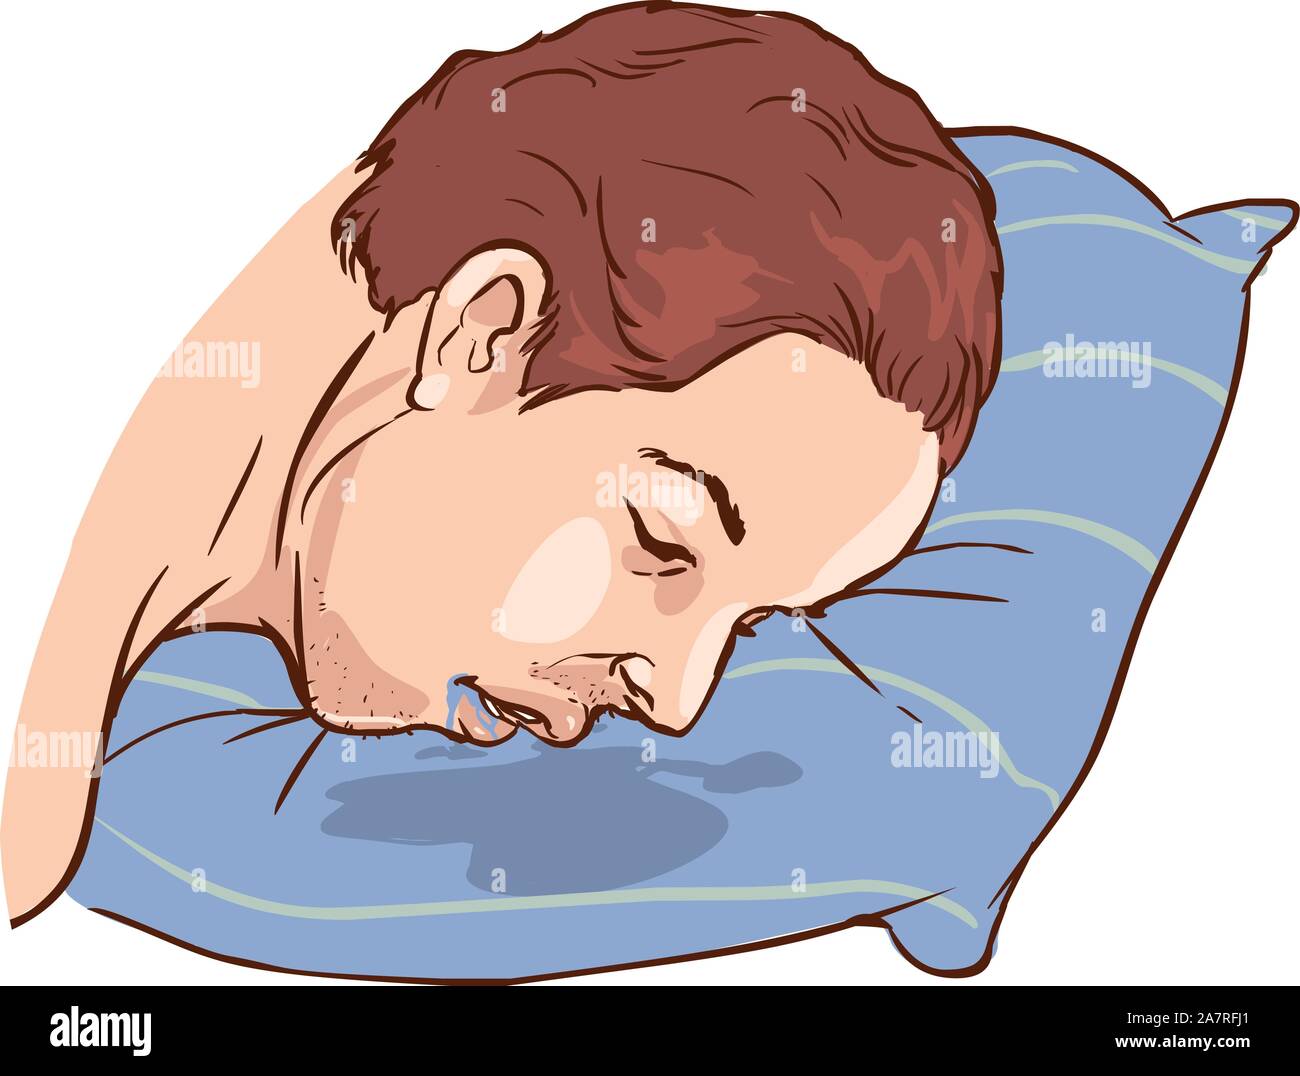 Почему давишься слюной. Слюни на подушке. Подушка и спящий человек.